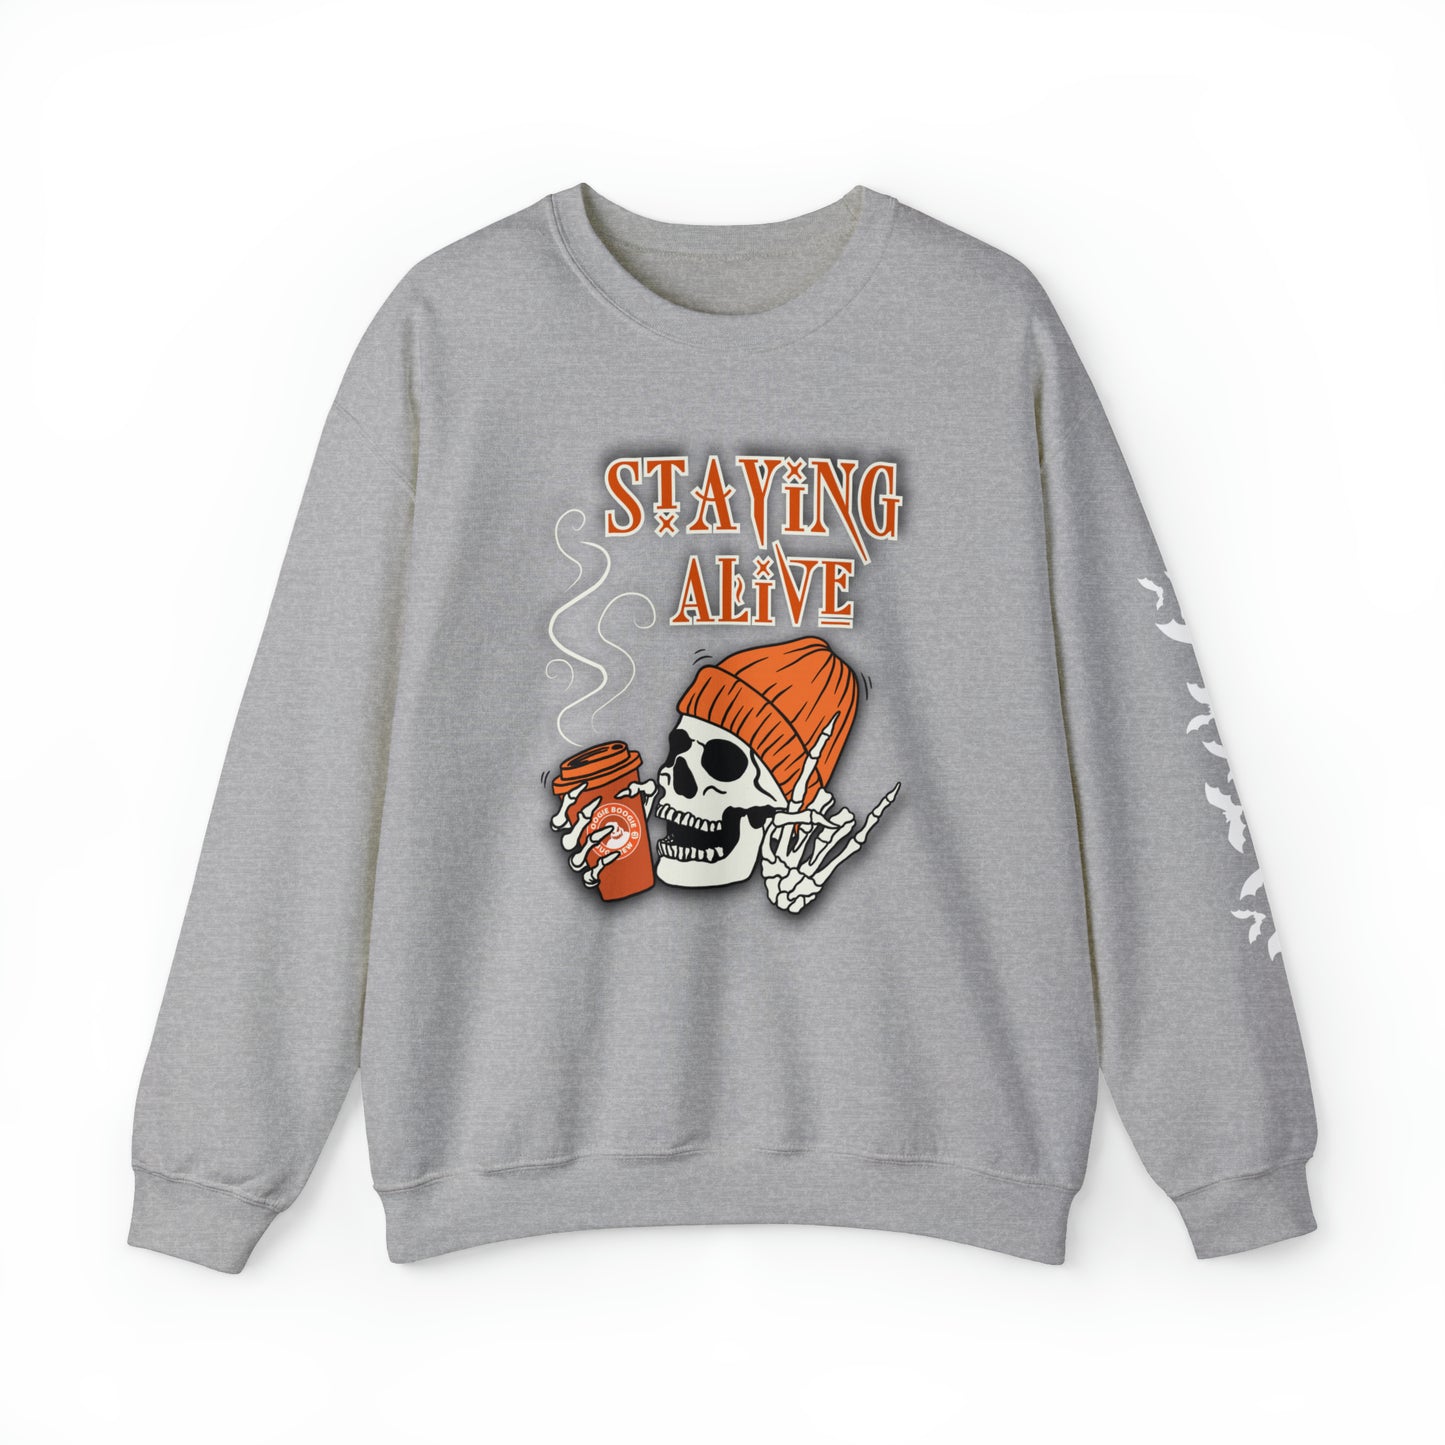 Staying Alive - Unisex Crewneck Sweatshirt